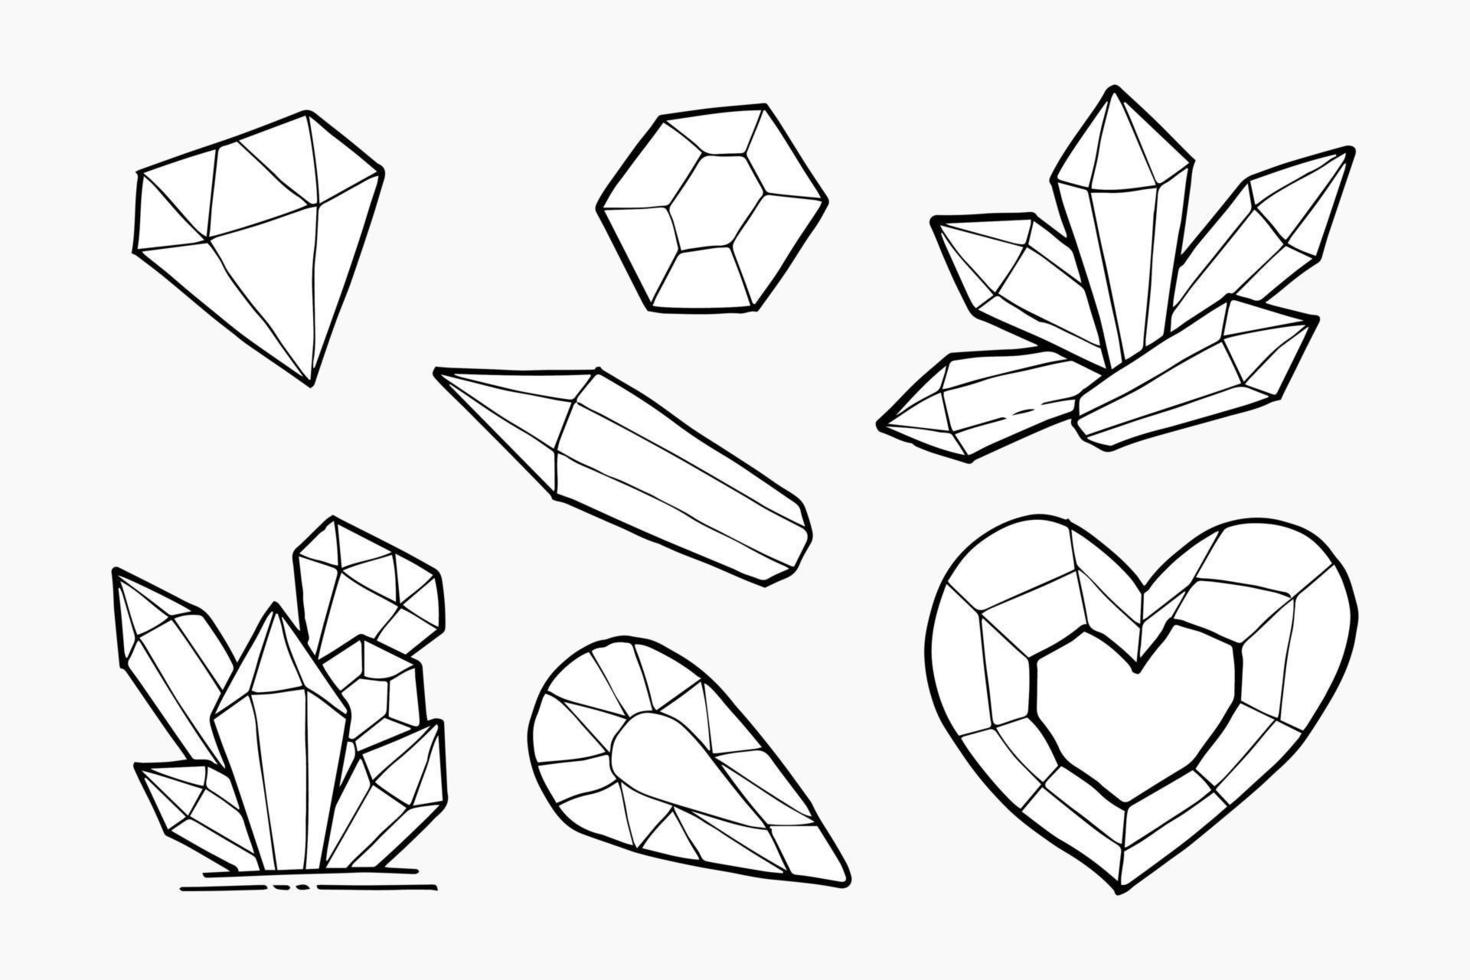 doodle mão desenhar conjunto de diamantes, ilustração vetorial. vetor